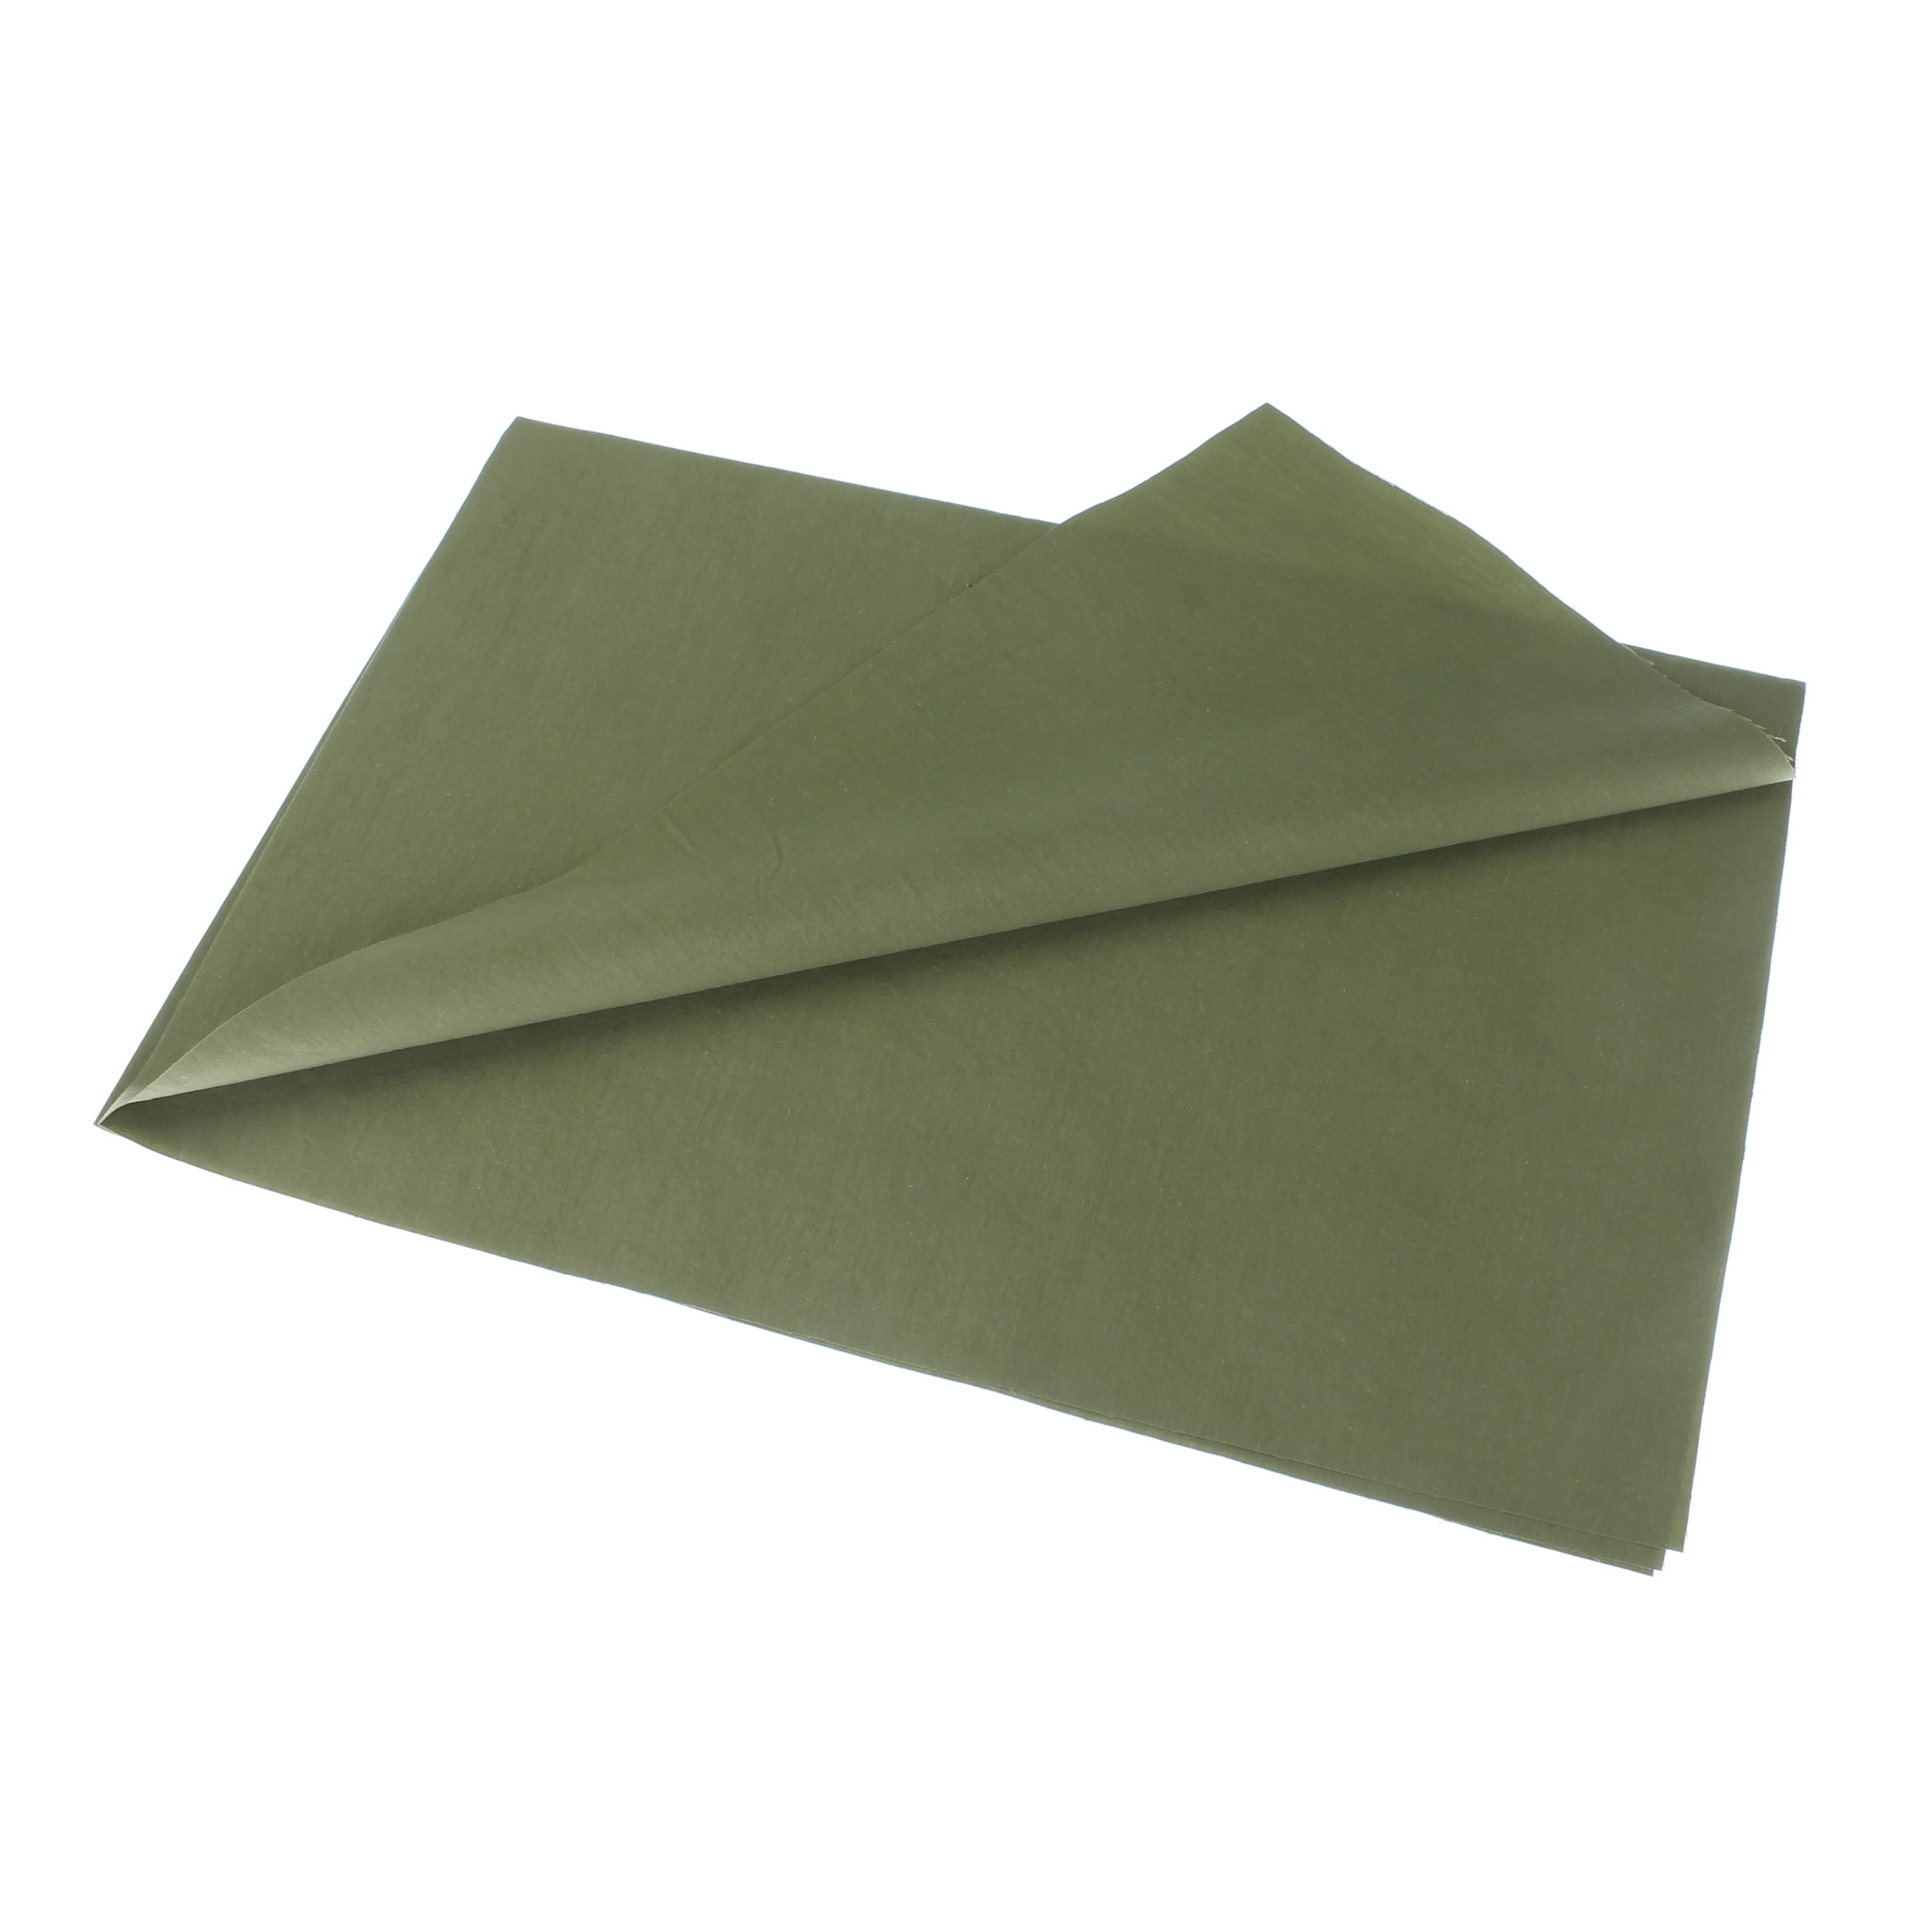 Hanjunzhao 10 Fat Quarter Bundles - Green Color Prints 100% Cotton Fabric -  Precuts Quilting Fabric - Full Size Fat Quarters 18x22